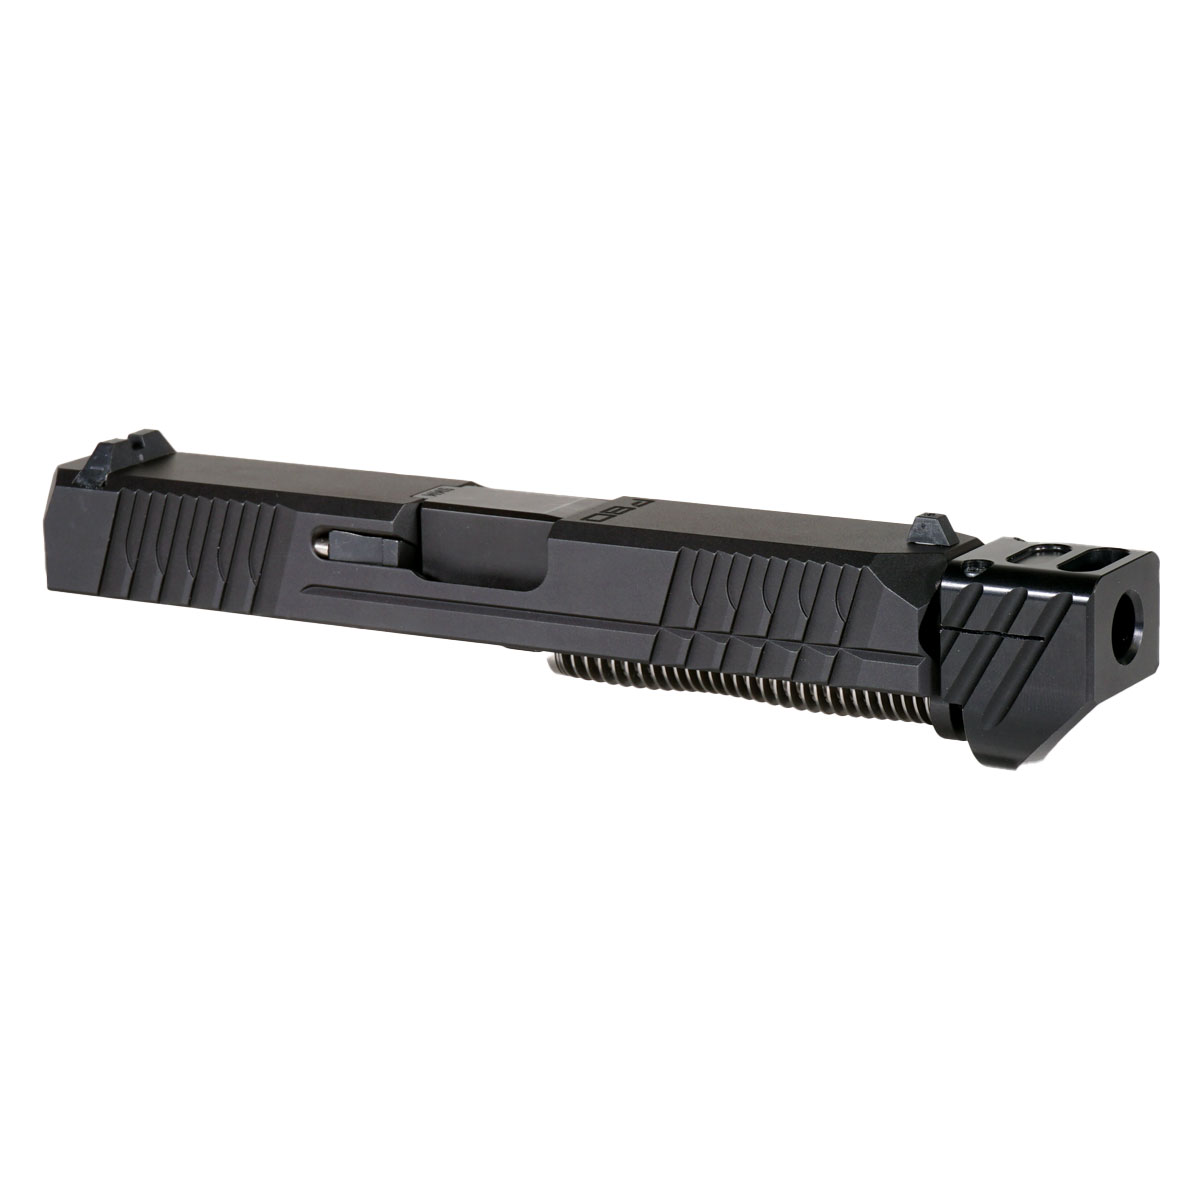 DD 'Paracausal V4 w/ Black Compensator' 9mm Complete Slide Kit - Glock 19 Gen 1-3 Compatible